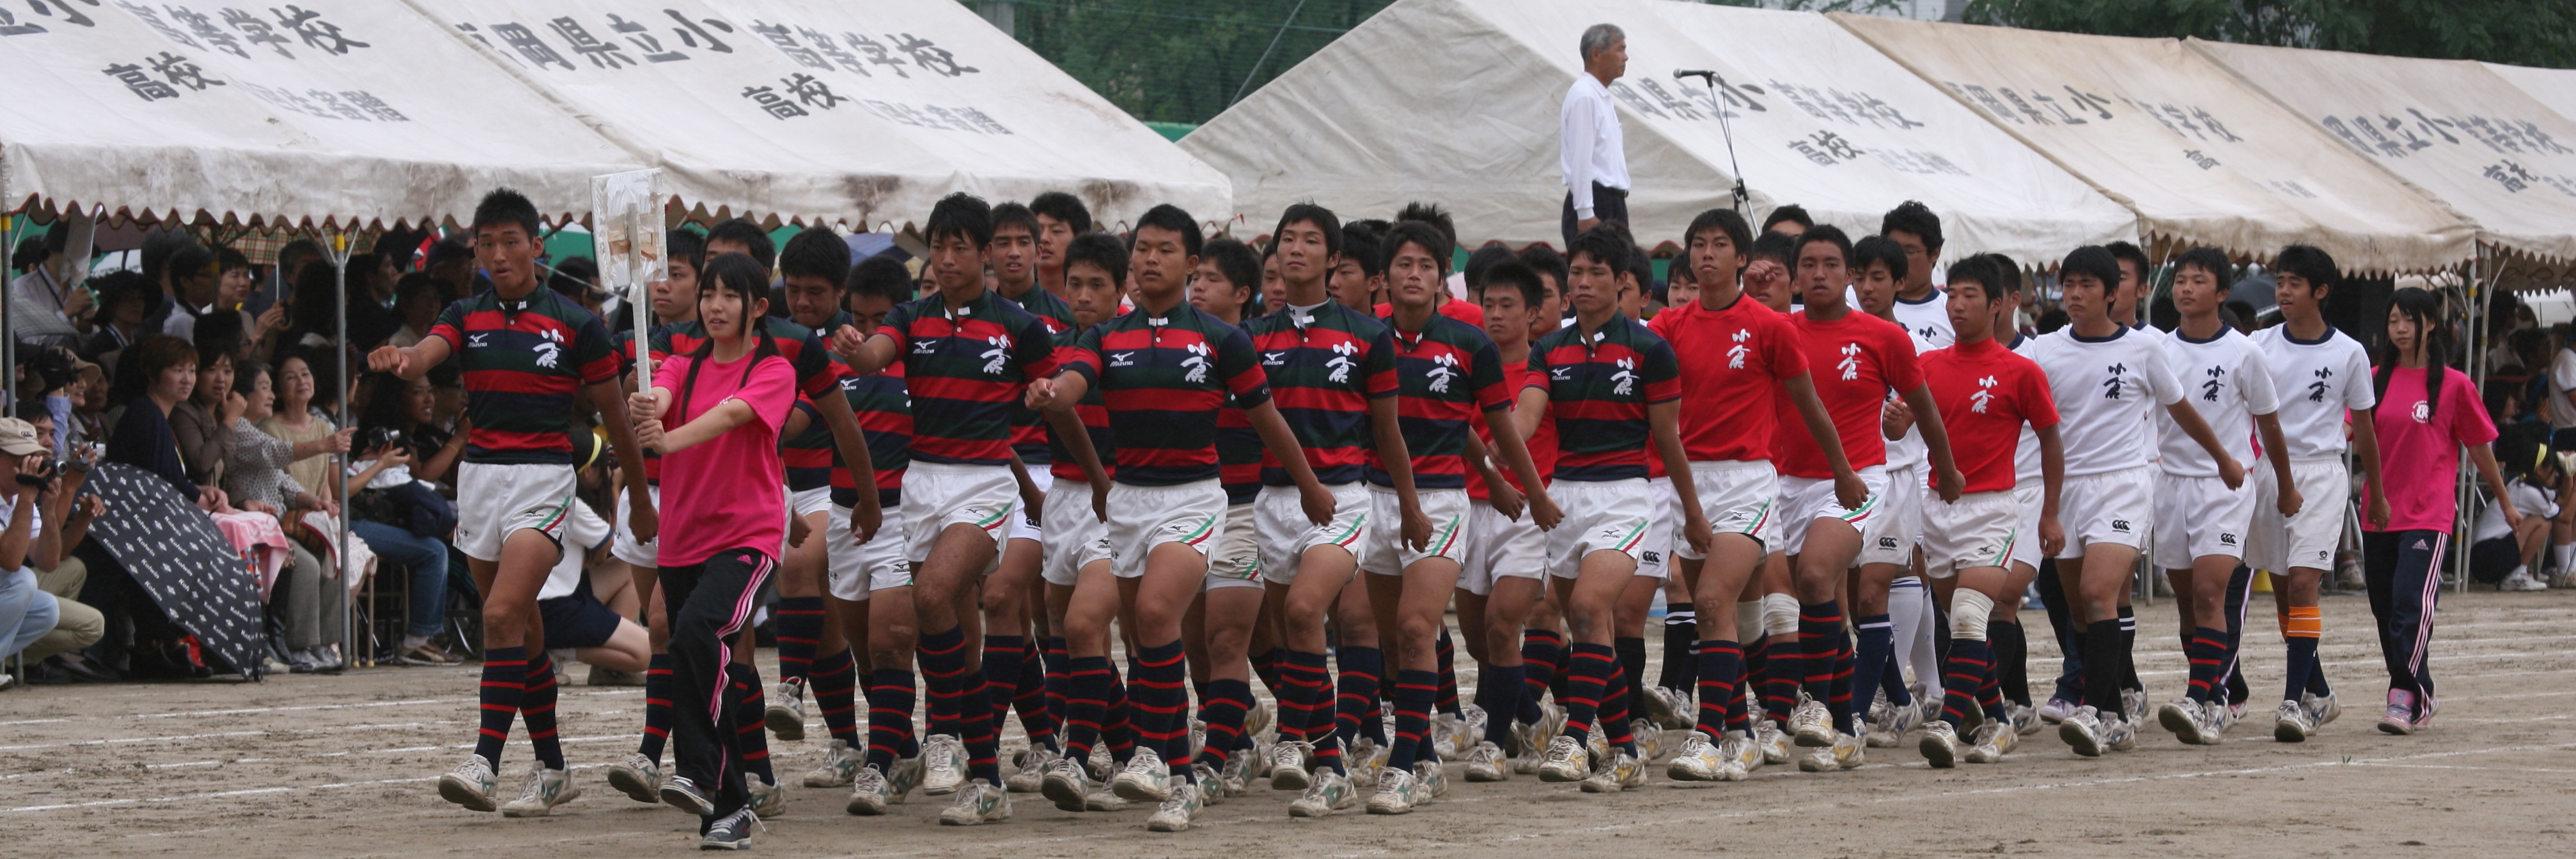 http://kokura-rugby.sakura.ne.jp/2011.9.4-11A.JPG